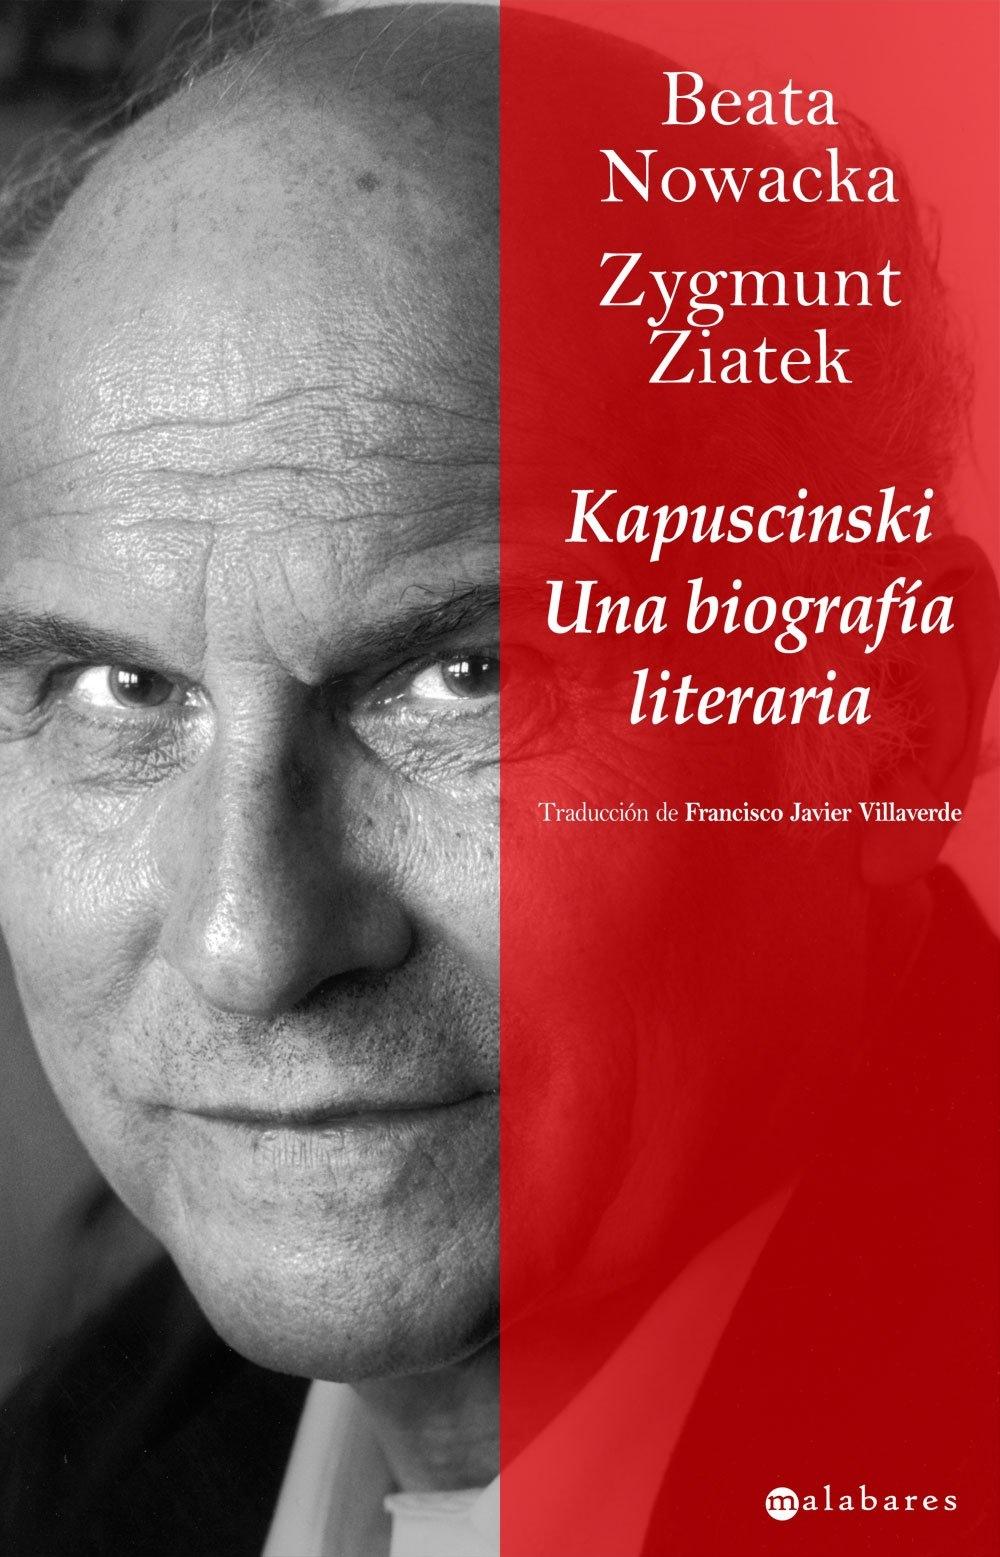 Kapuscinski "Una Biografía Literaria"